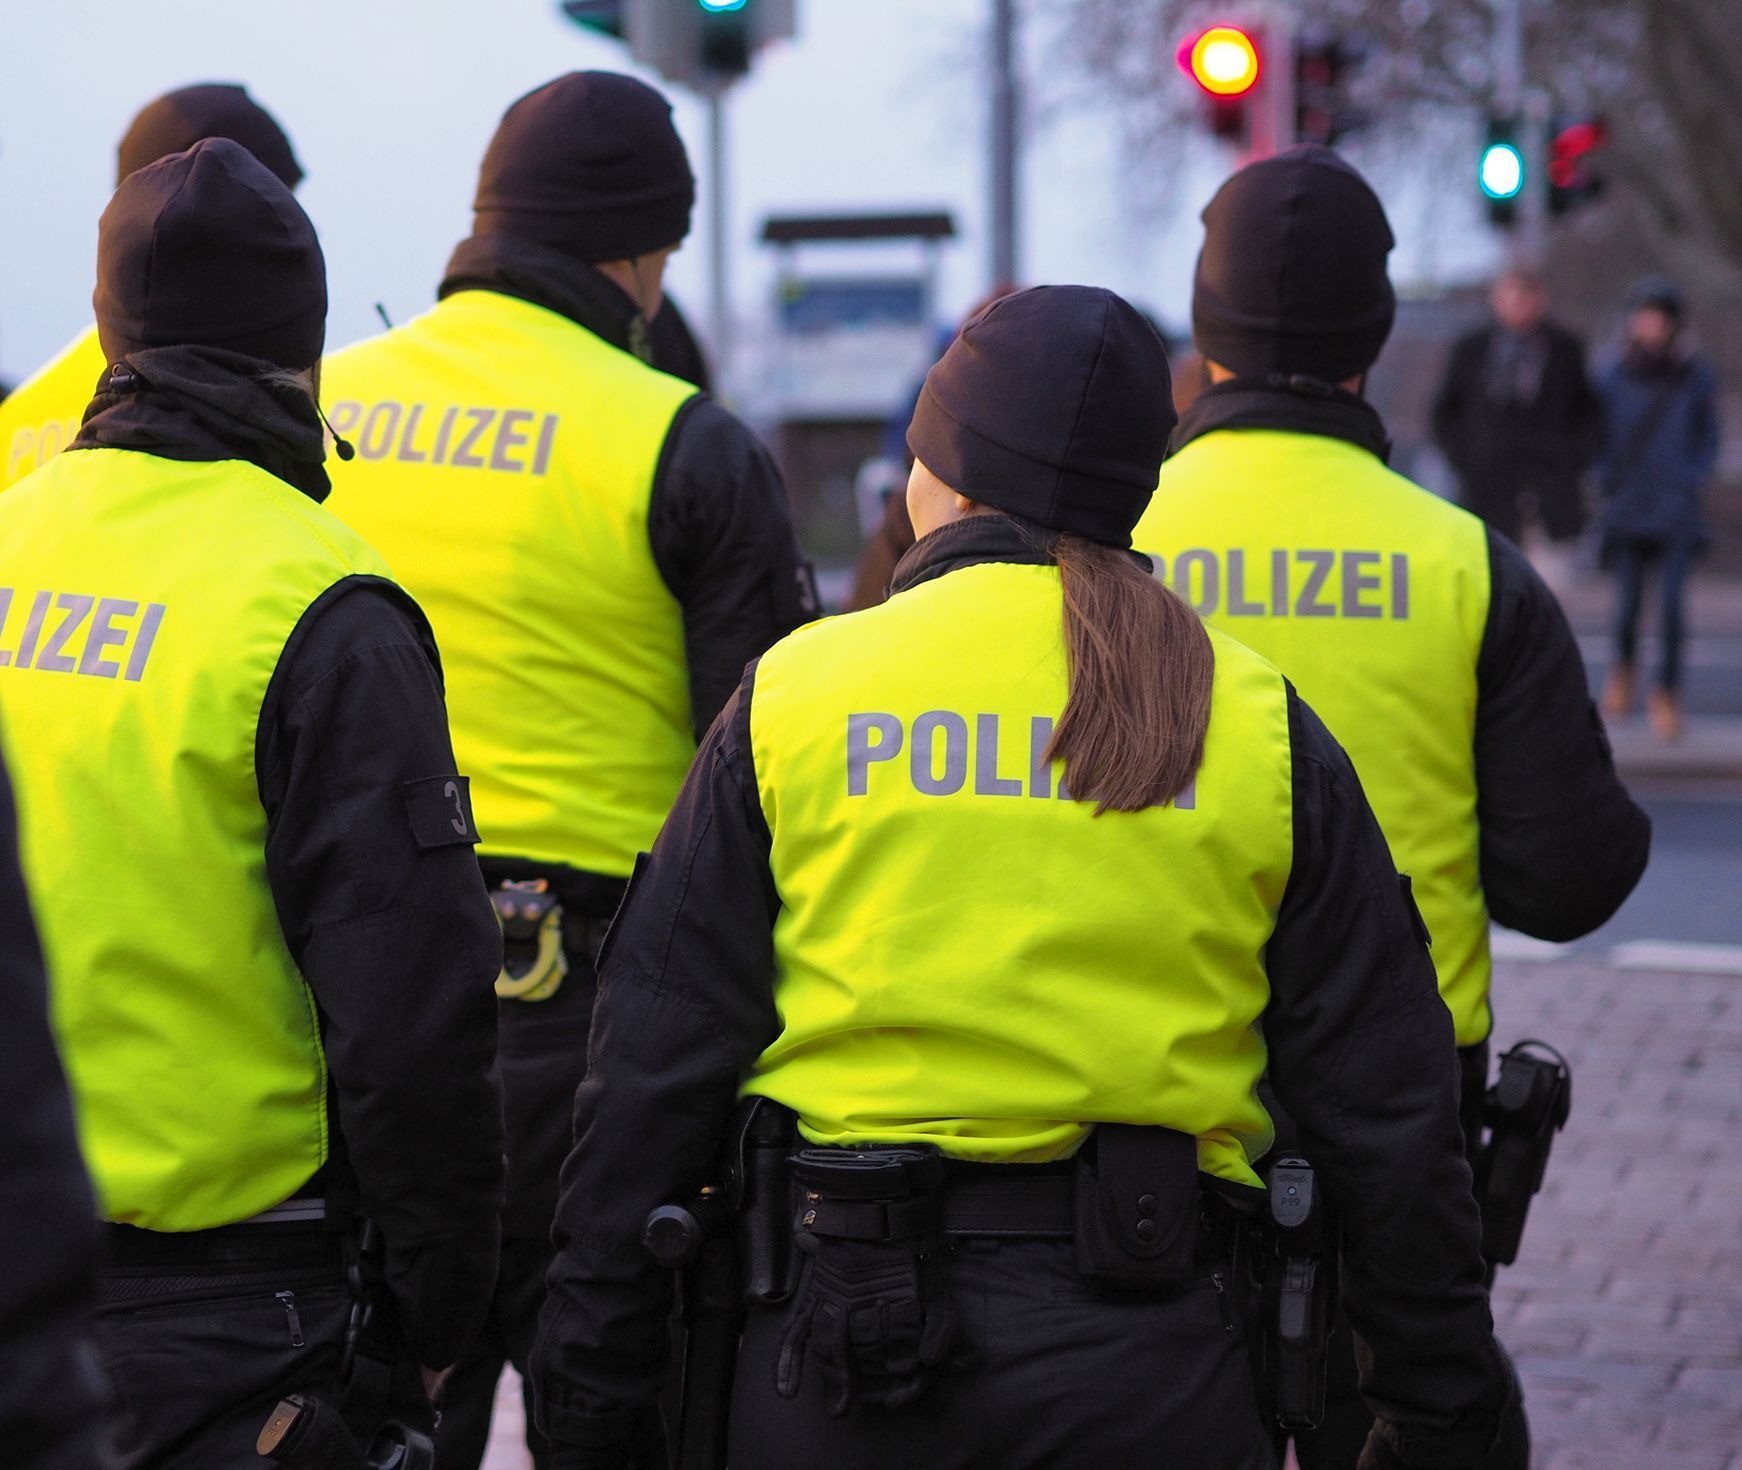 Ilustrační snímek / Německá policie / Německo / Policie / Bezpečnost / Policista / Policejní hlídka / iStock